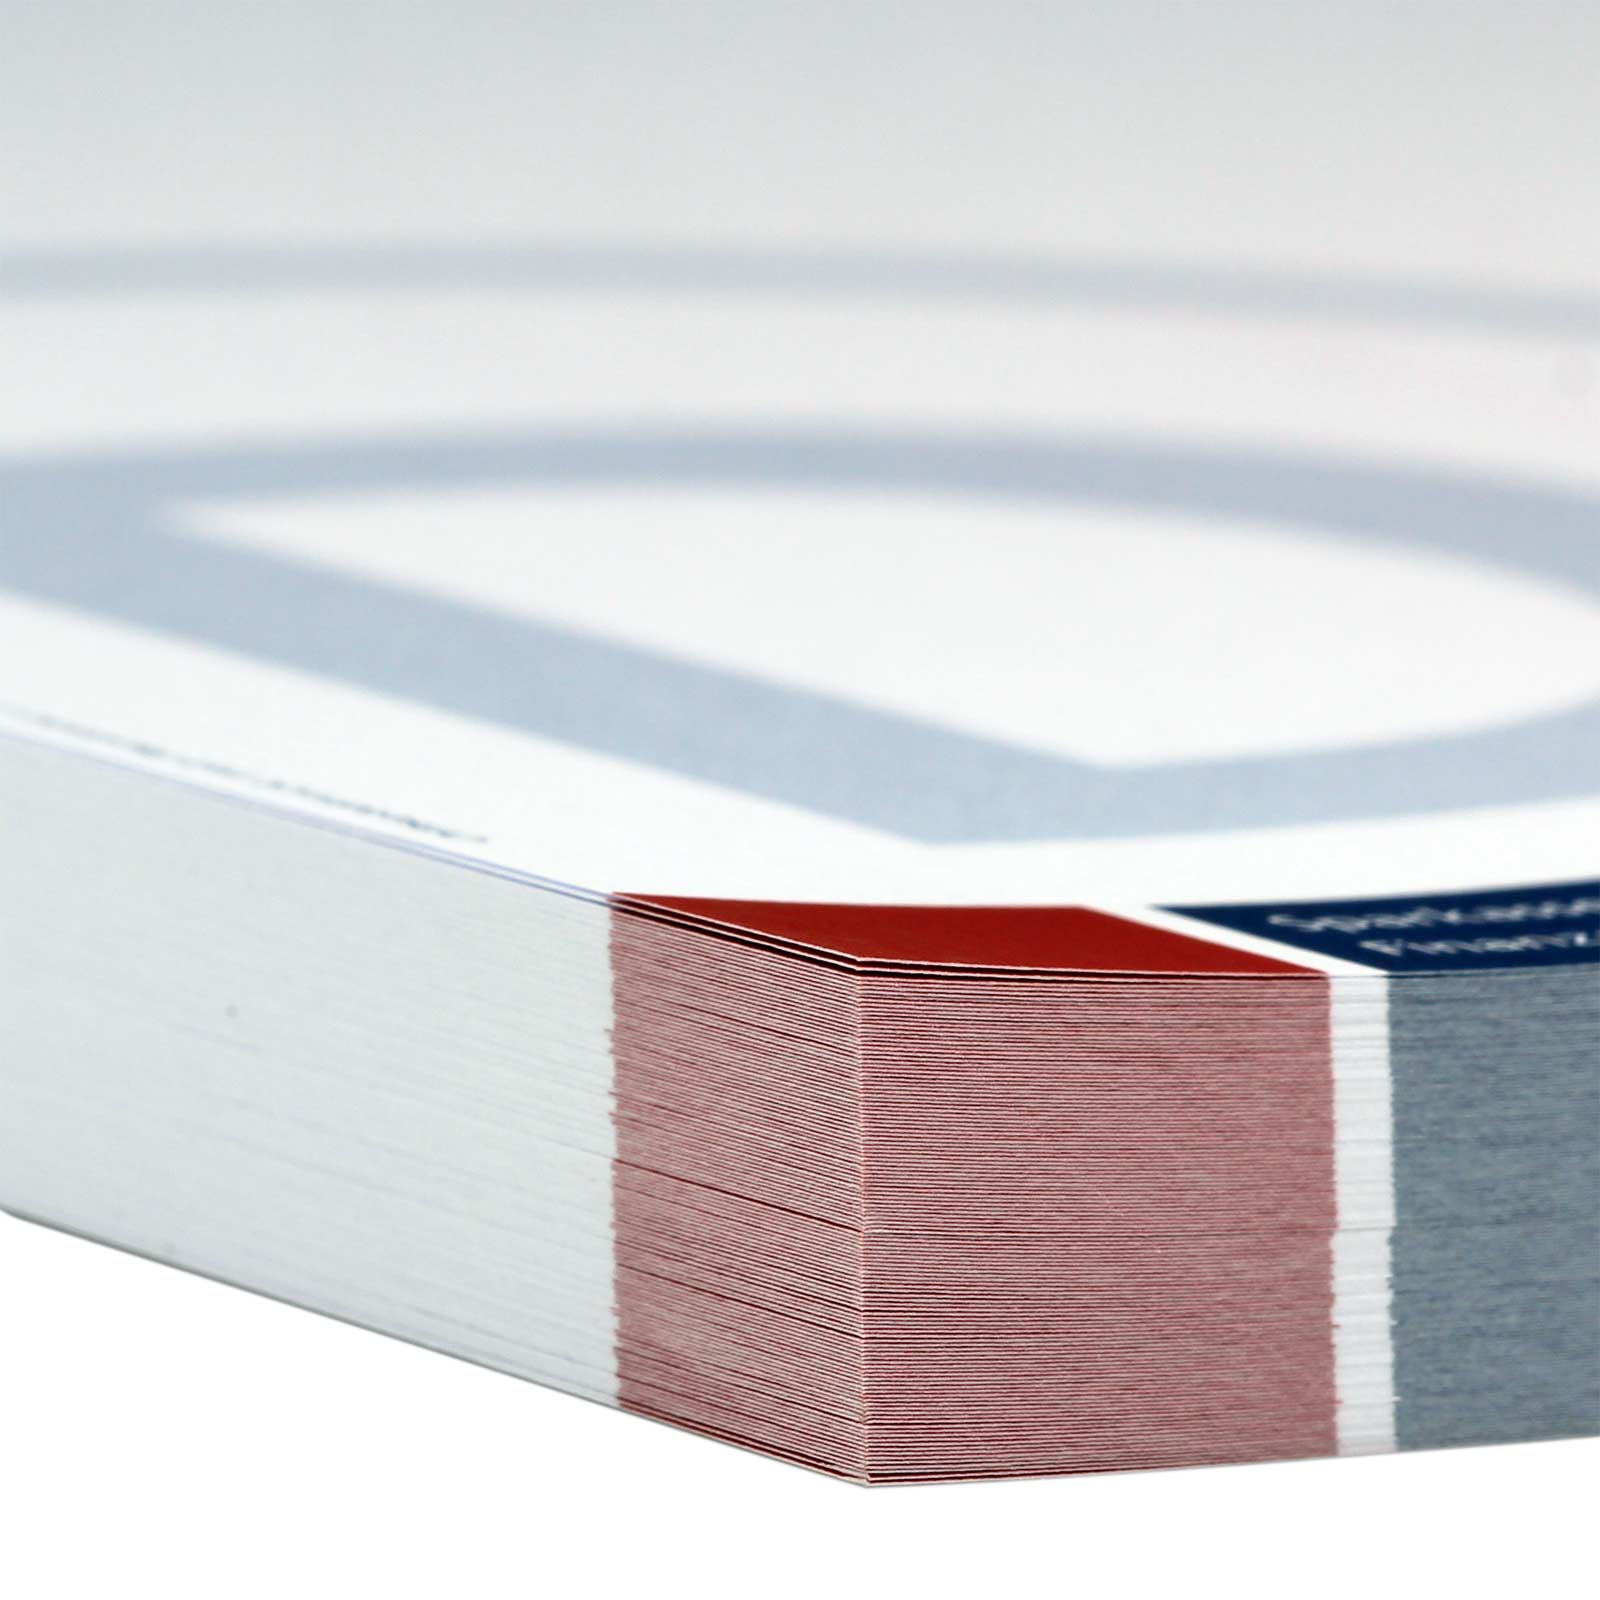 Briefbögen A4 2-farbig beidseitig bedruckt nach HKS 90g Papier